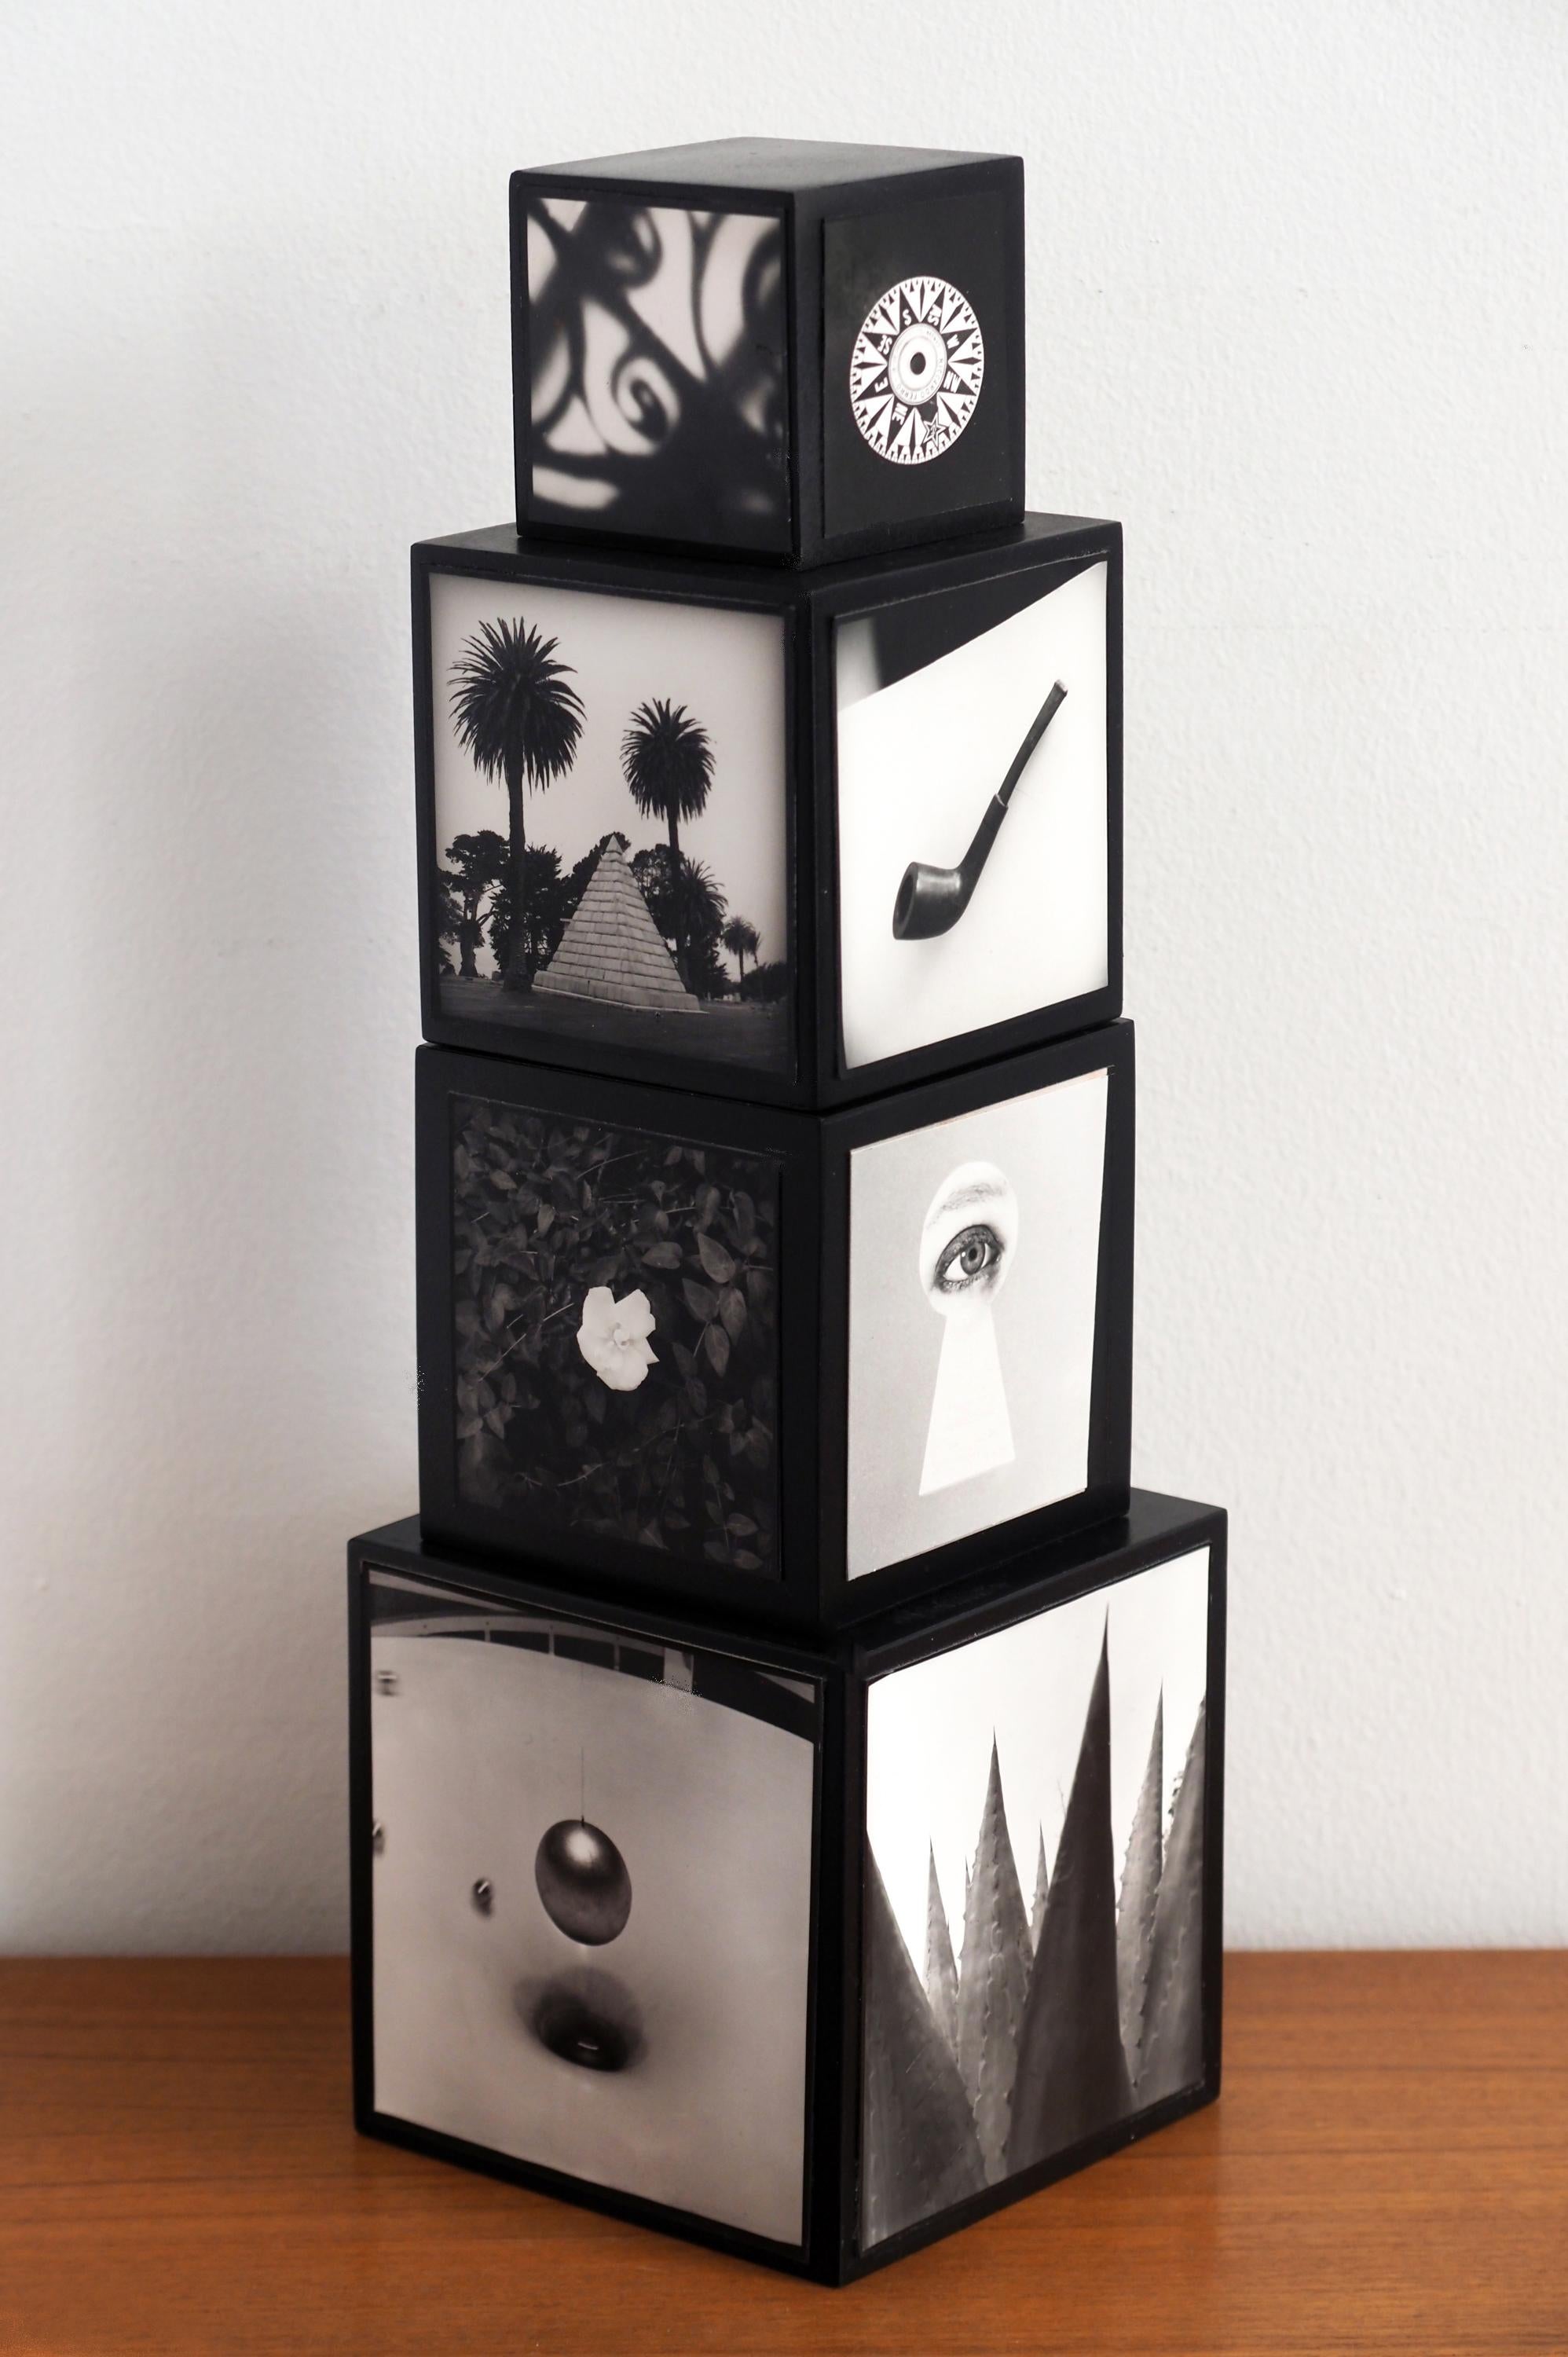 PhotoTotem Tell-Tale : sculpture cubique en bois empilée avec photographies en noir et blanc - Photograph de Jenny Lynn